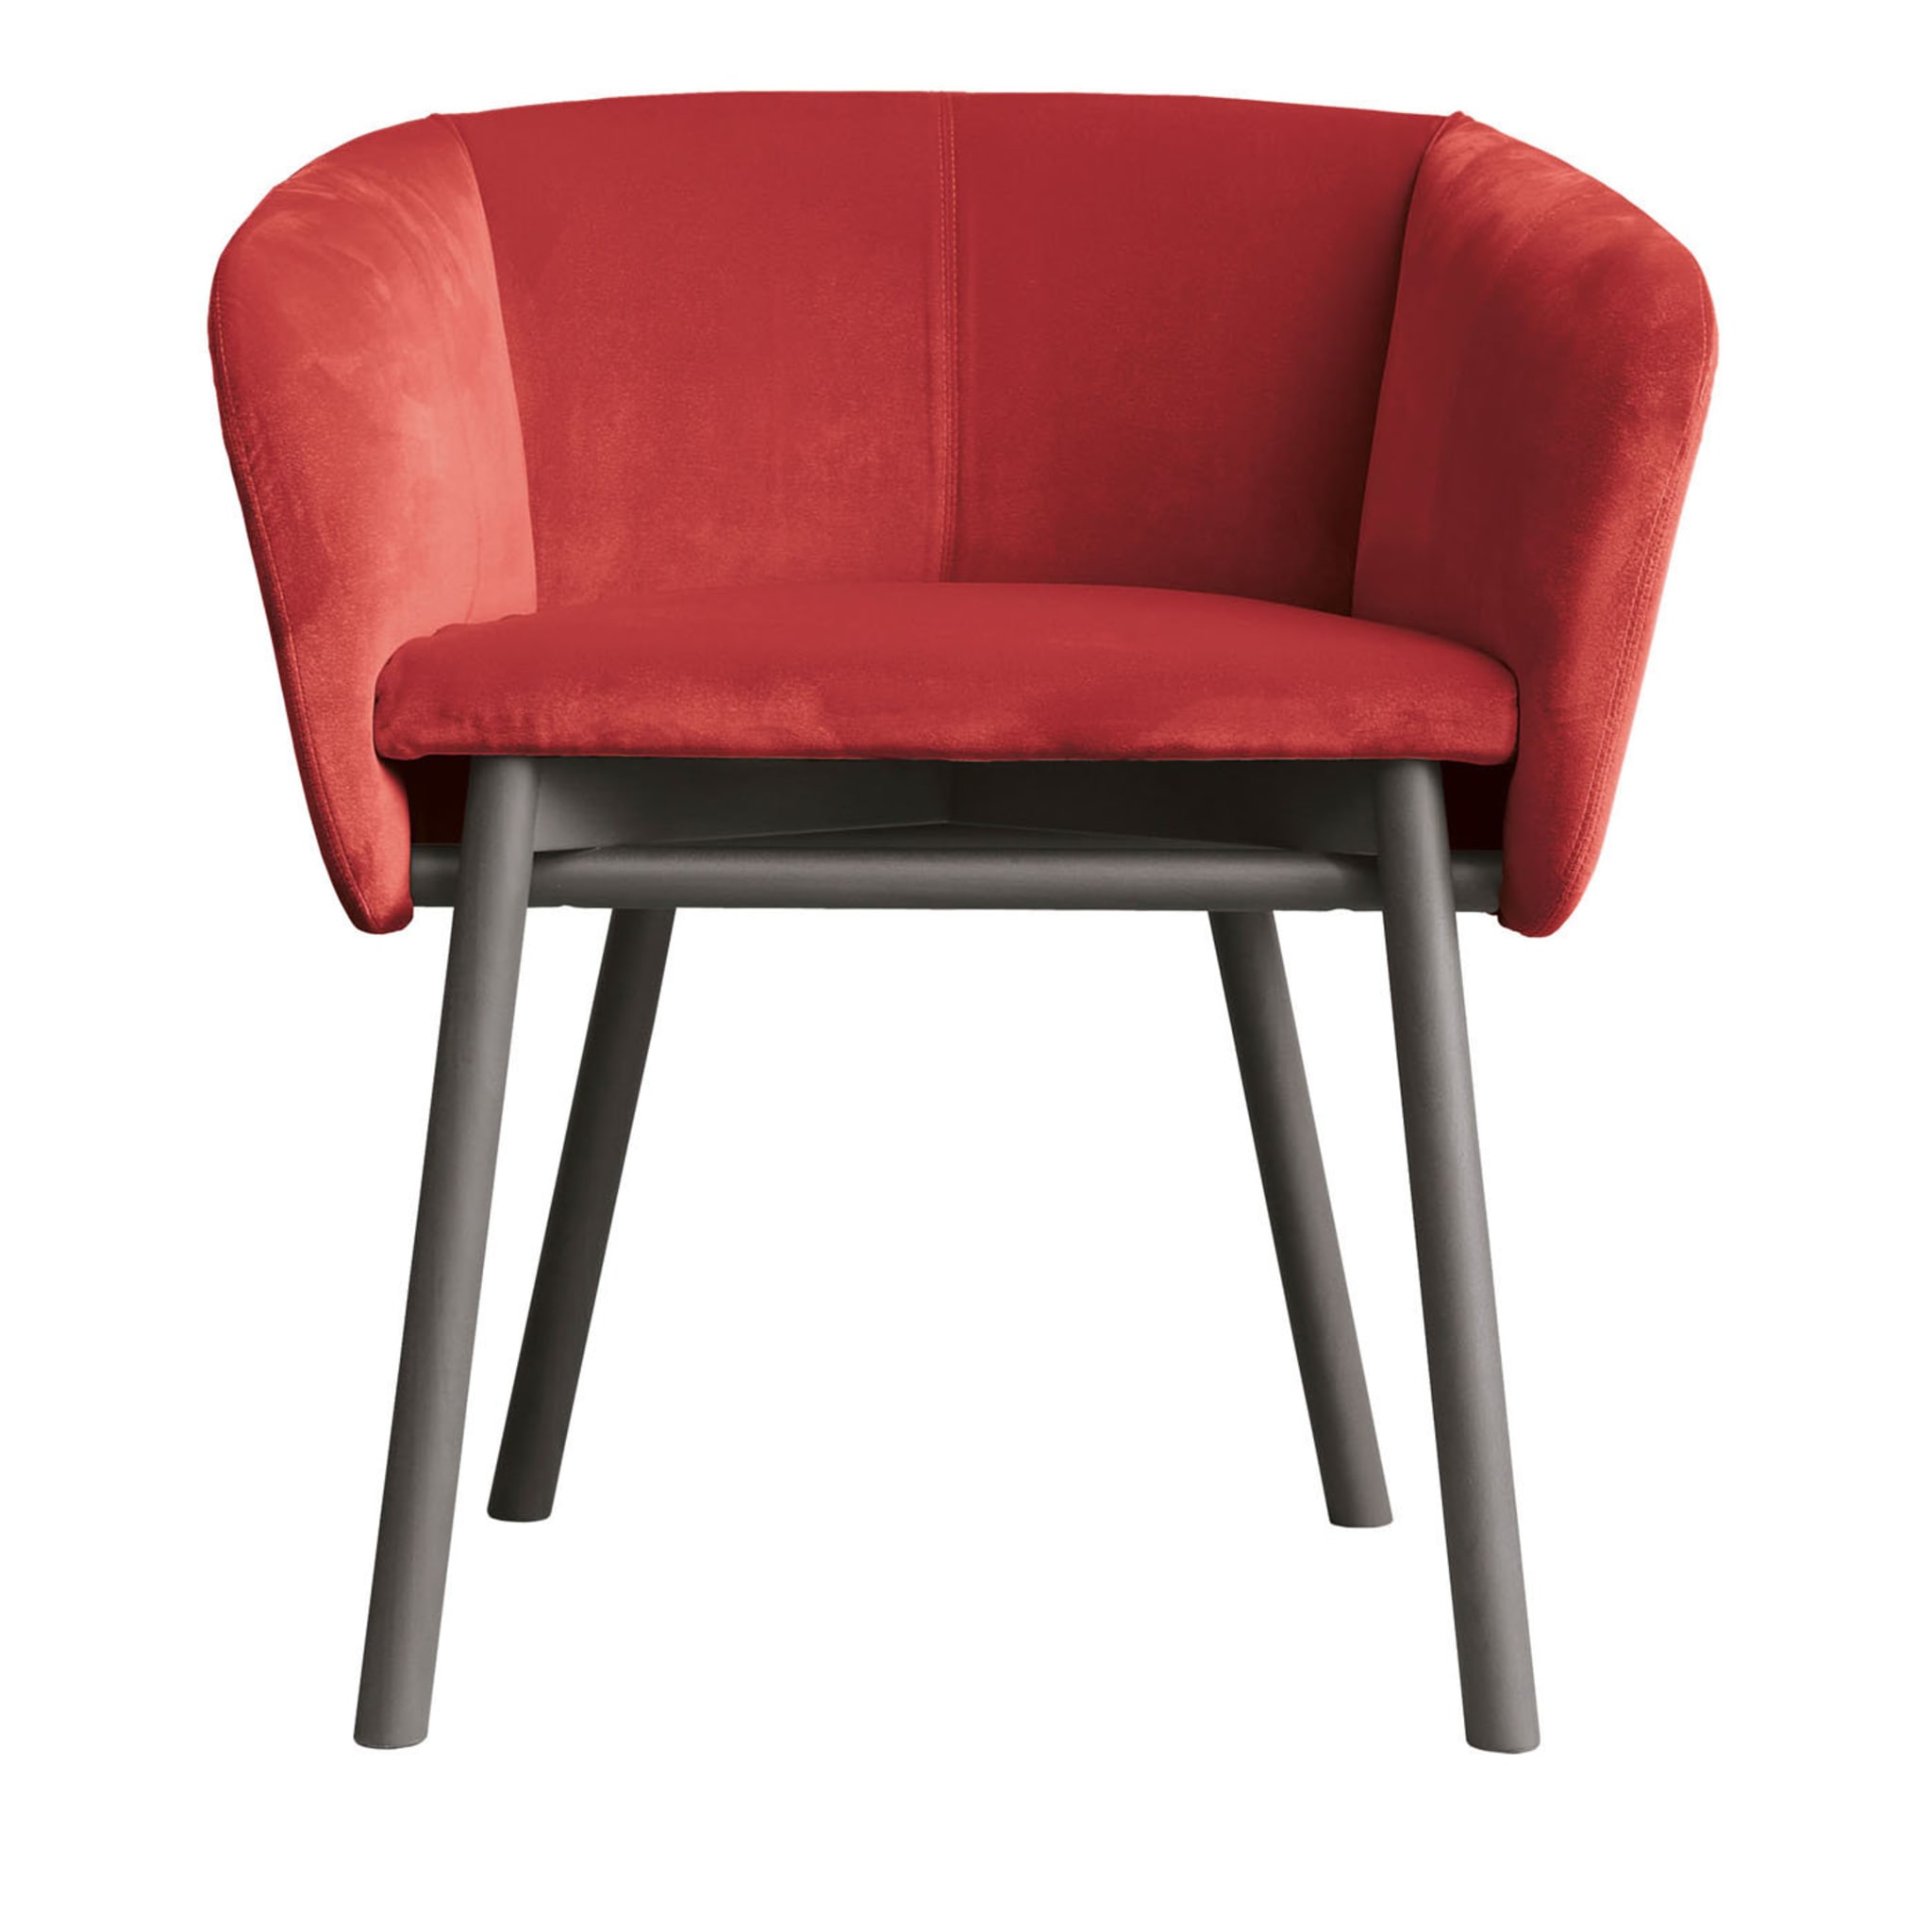 Balù Roter Stuhl von Emilio Nanni - Hauptansicht